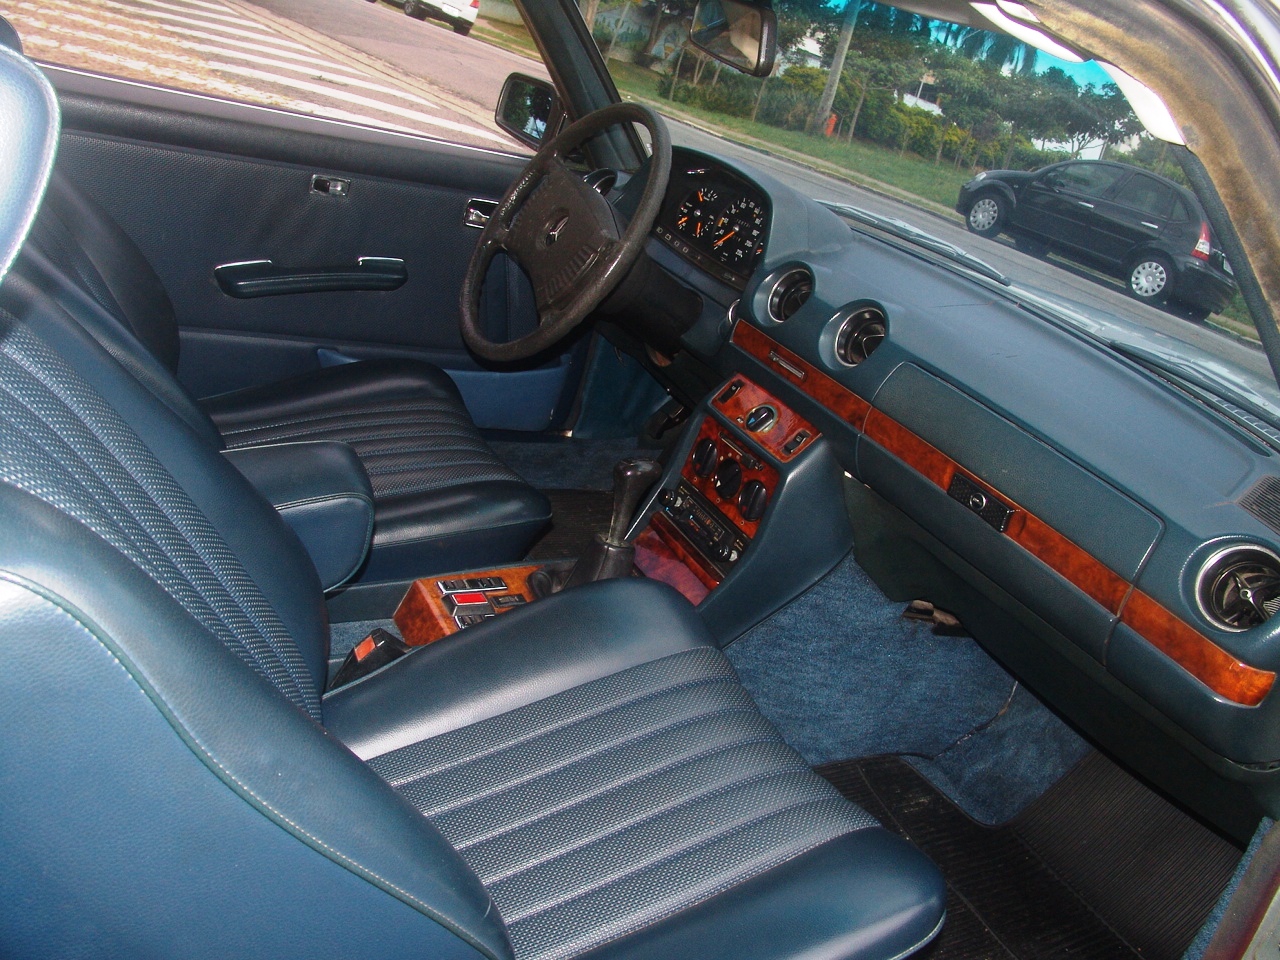 (VENDO) W123 280C Coupe 1978 R$42.000,00 Dsc04324